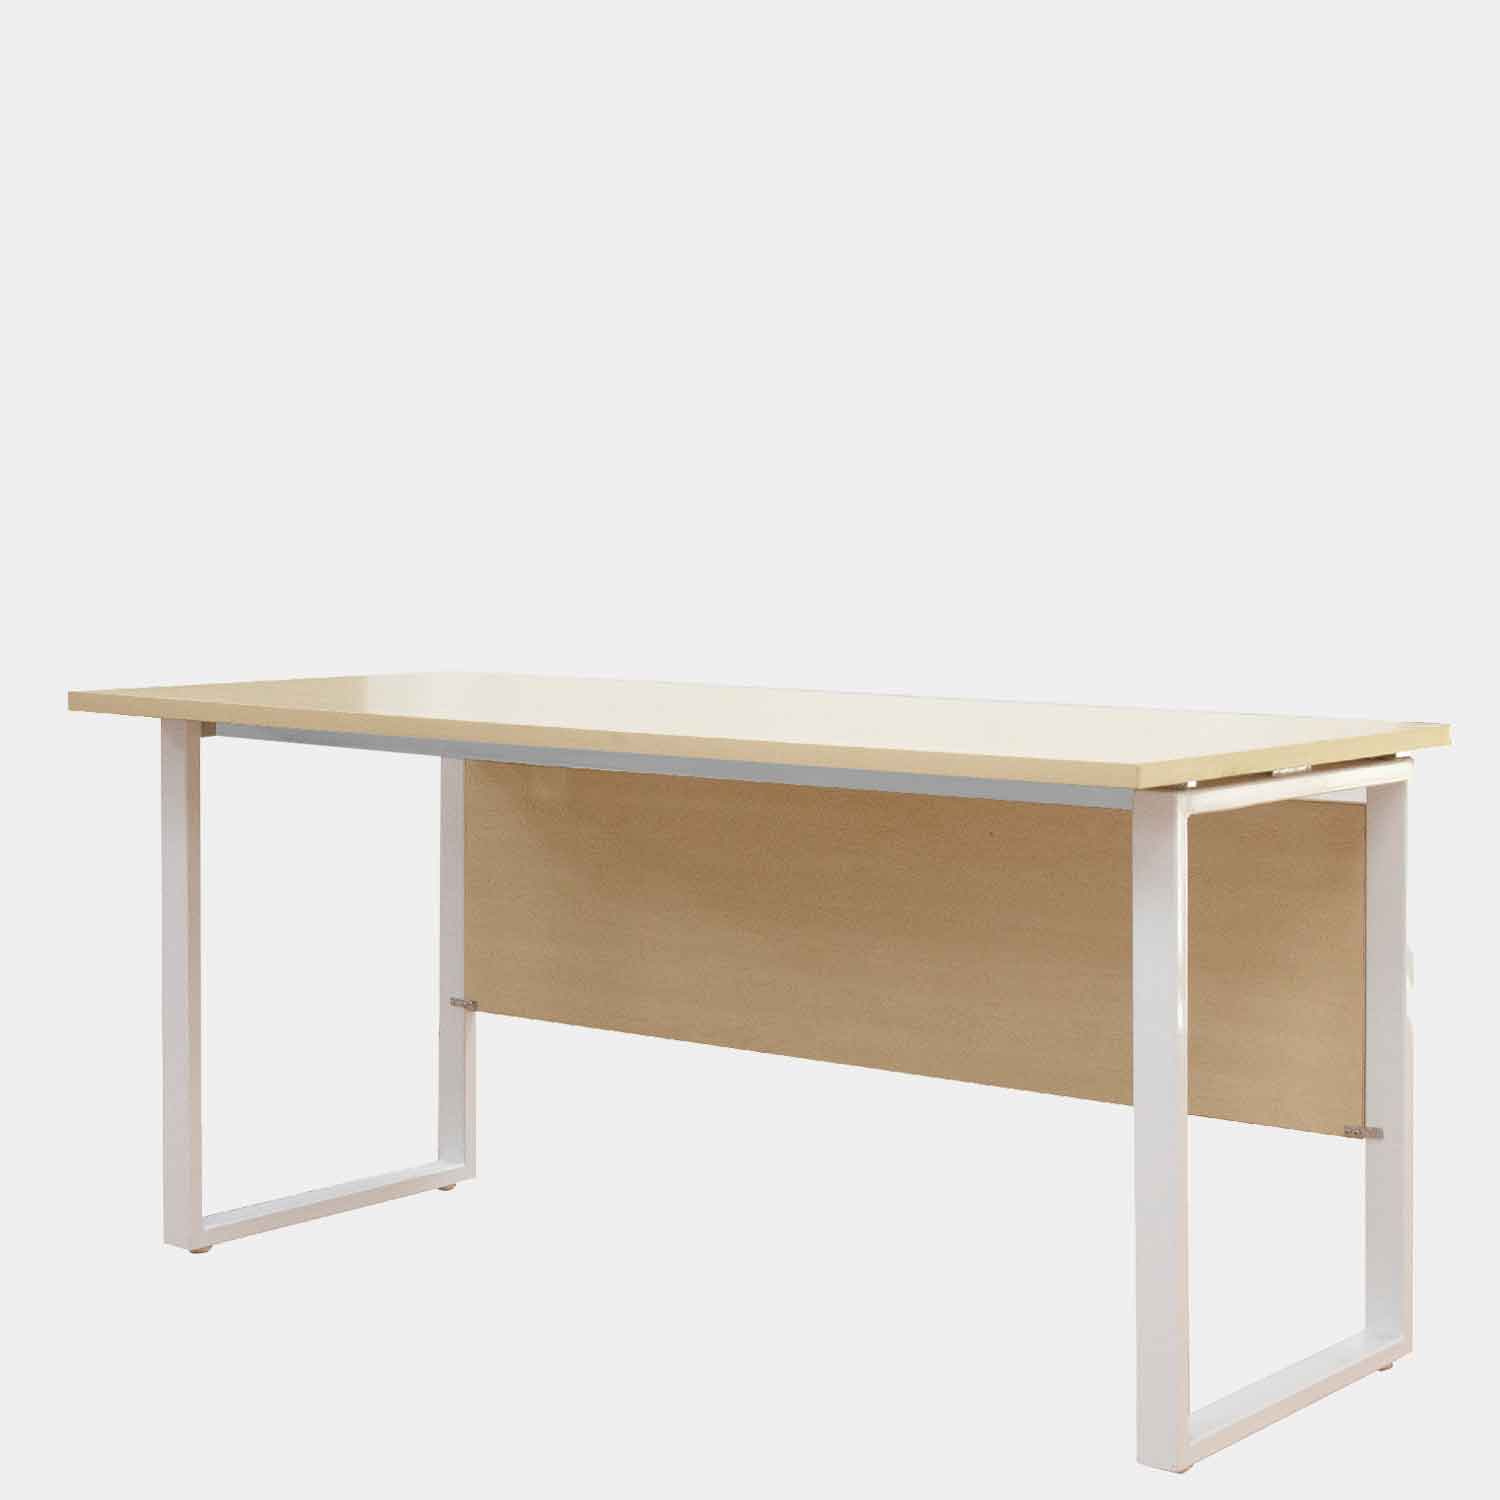 โต๊ะทำงาน Sc-Series : ผลิตและจัดจำหน่ายโดยไอคอนิคเฟอร์นิเจอร์